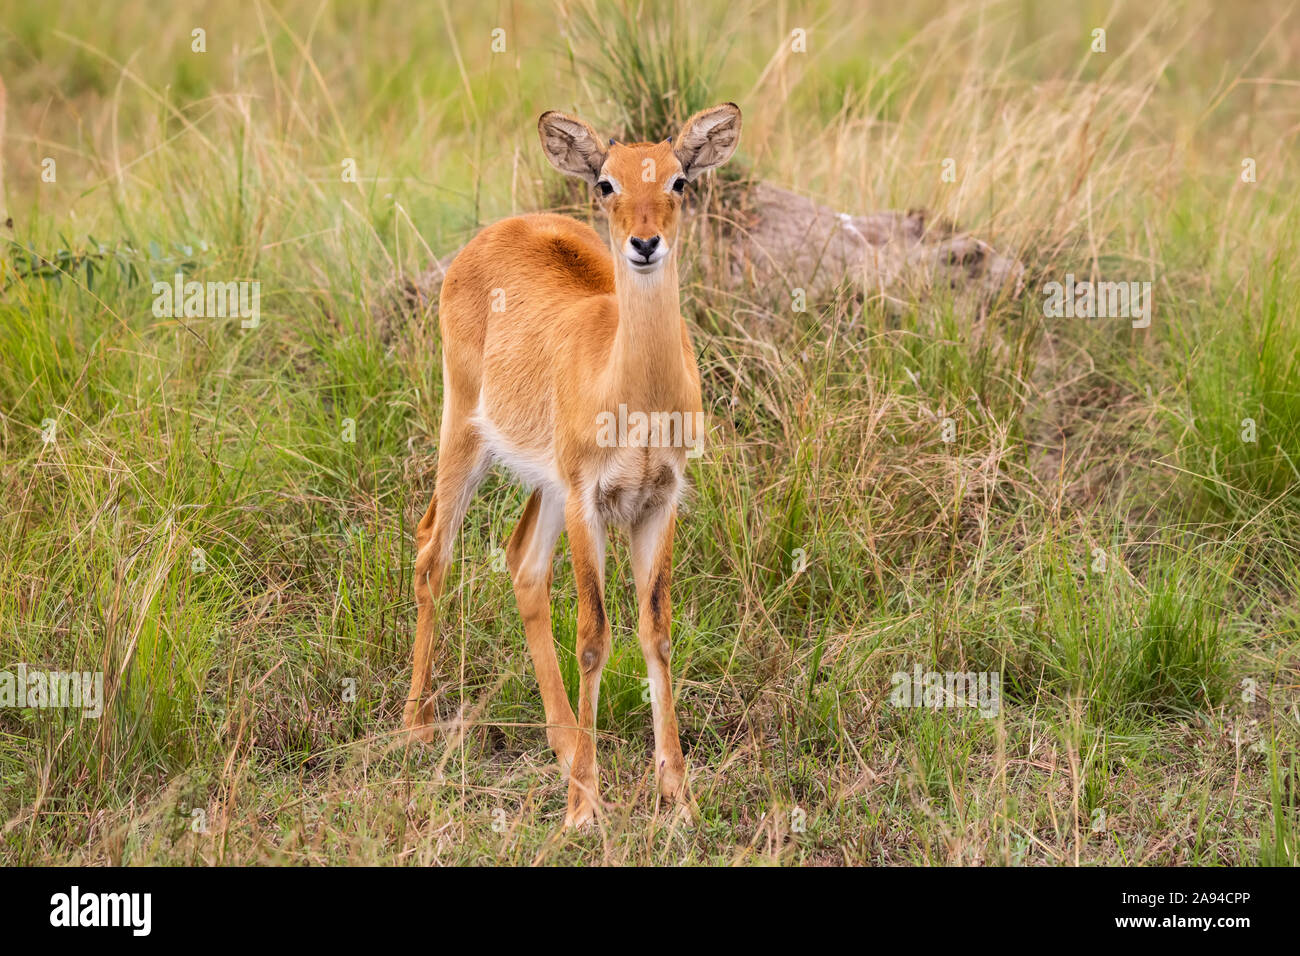 Ugandan kob (Kobus kob thomasi), Queen Elizabeth National Park; Western Region, Uganda Stock Photo